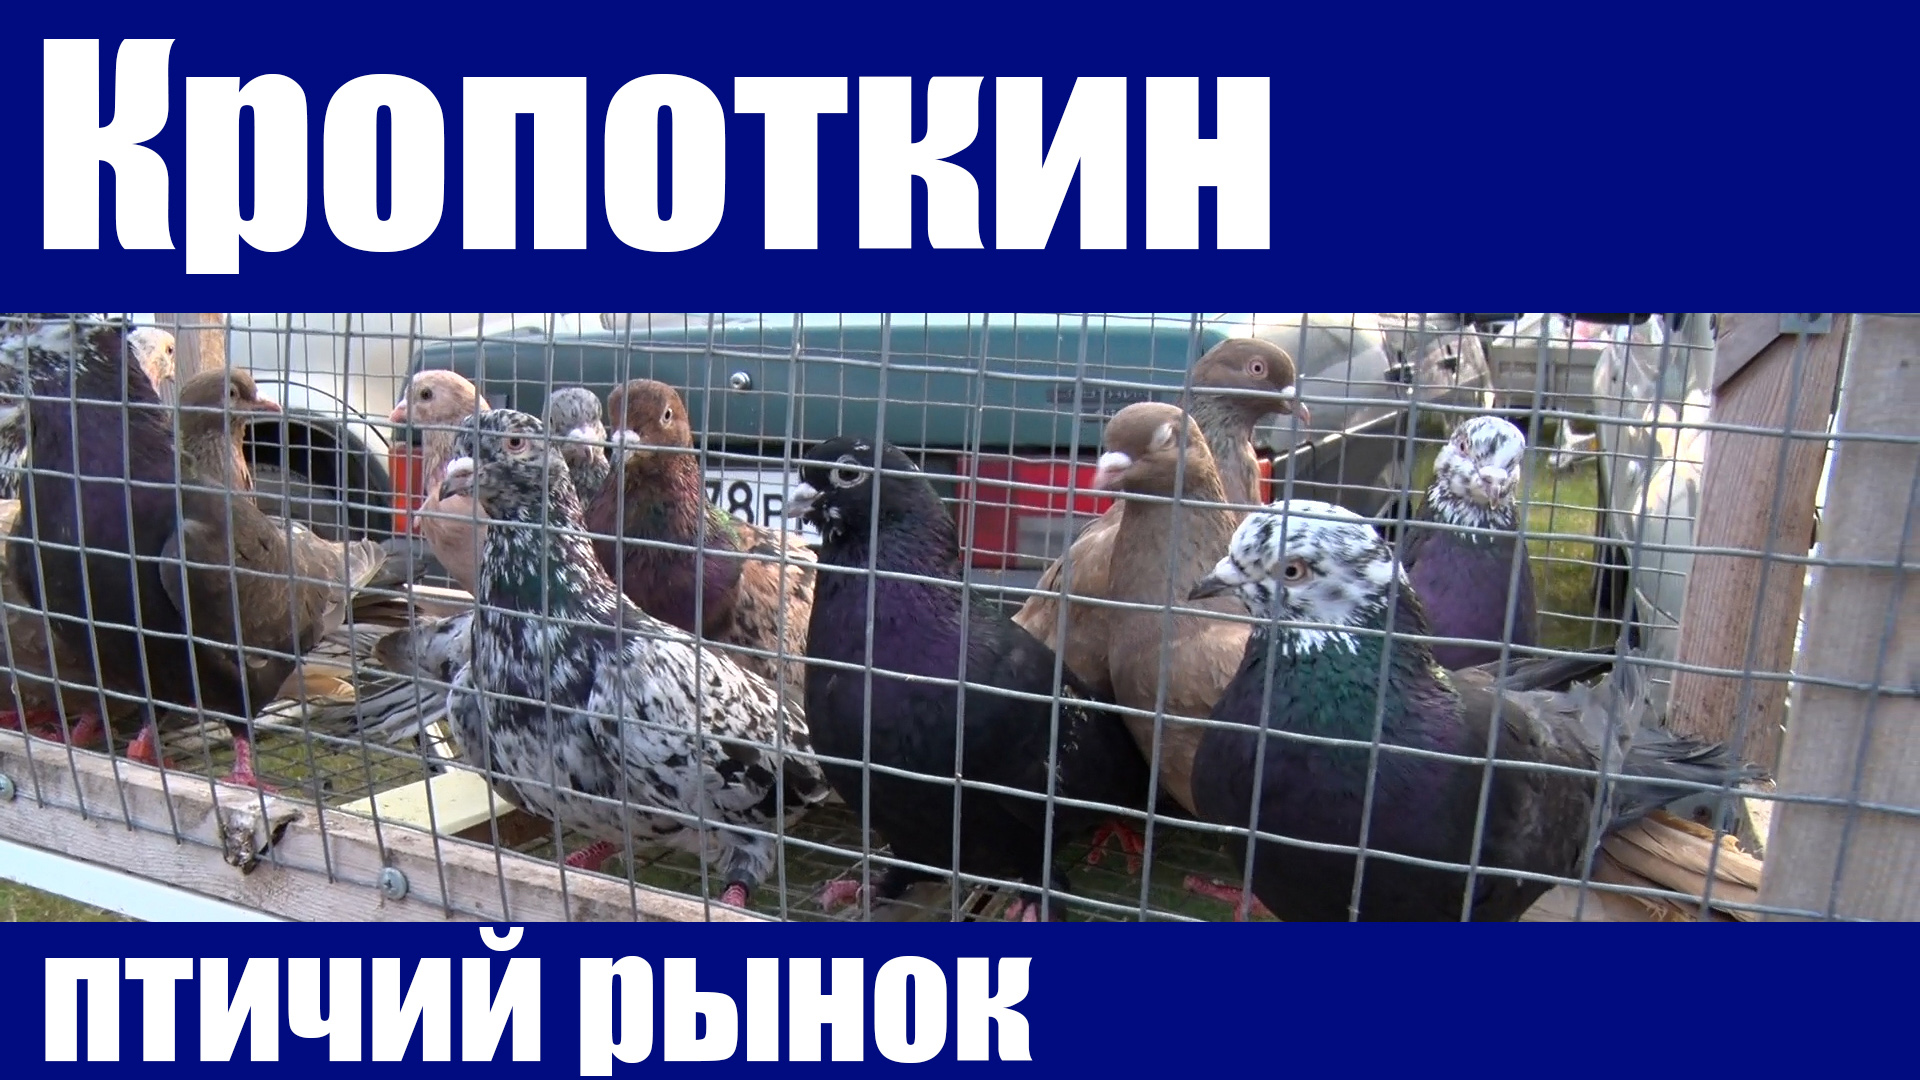 Кропоткин выставка голубей. Птичий рынок в Кропоткине. Ярмарка голубей в Кропоткине. Голуби на птичьем рынке. Выставка голубей в Кропоткине.